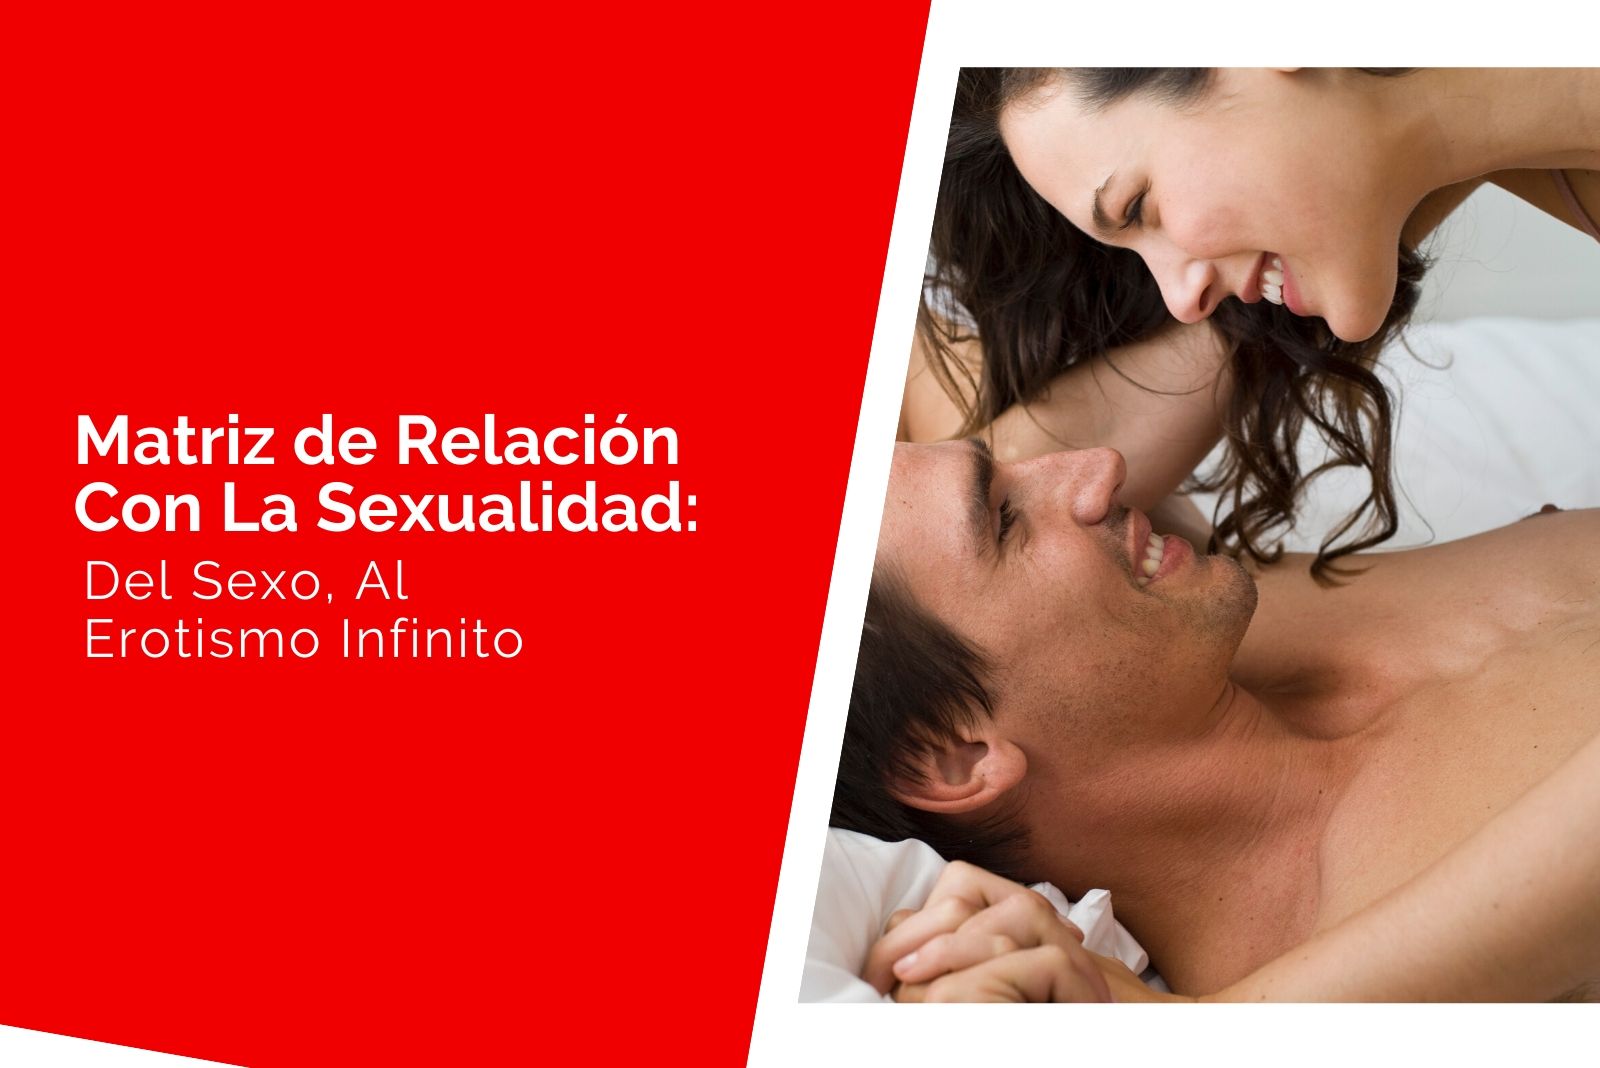 Héctor-Jimenez-Qué-es-la-Matriz-de-6-campos-Relación-con-la-sexualidad-1